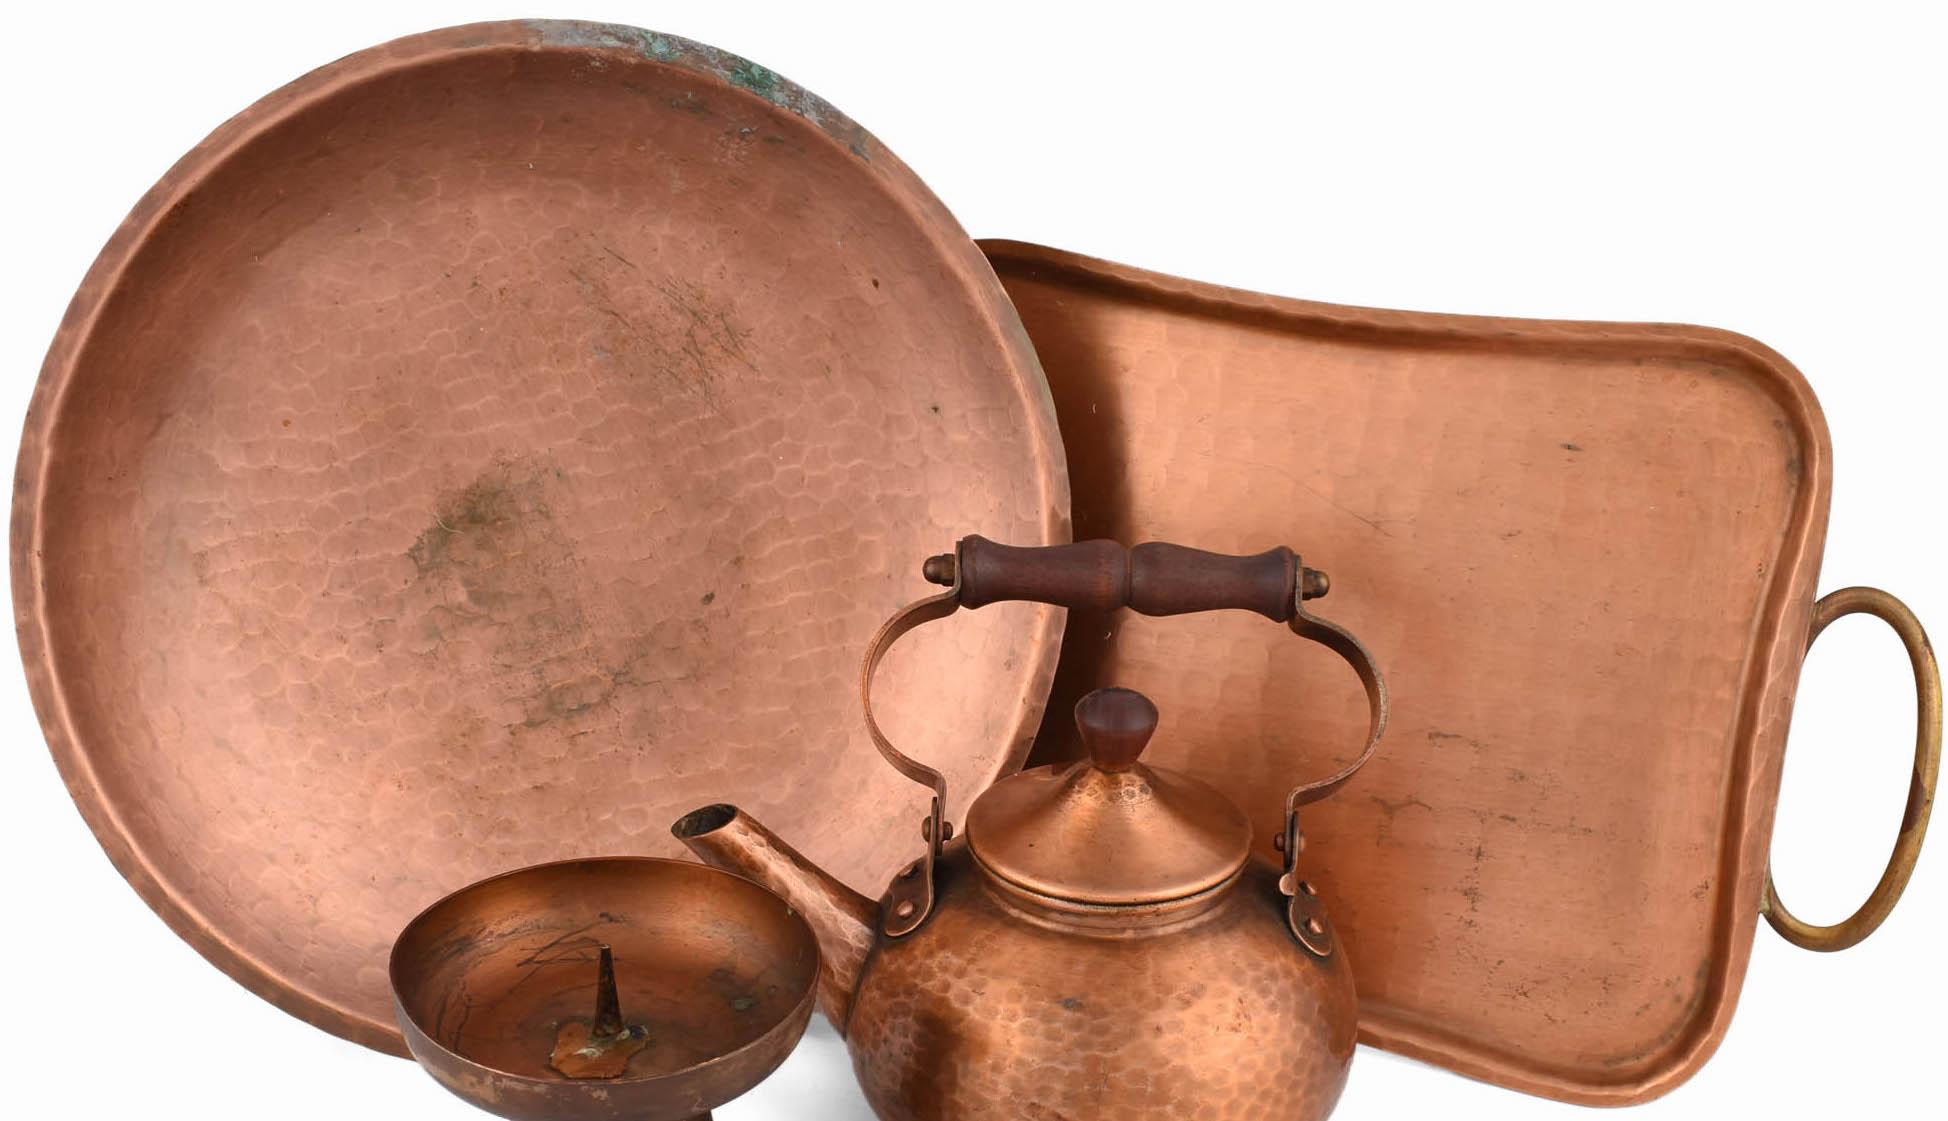 L'ensemble en cuivre d'Eugen Zint est un groupe original d'objets réalisés dans les années 1950.

Objets originaux en cuivre, l'ensemble comprend : un plateau rectangulaire avec des poignées en laiton, un bougeoir, une théière et un bol arrondi.